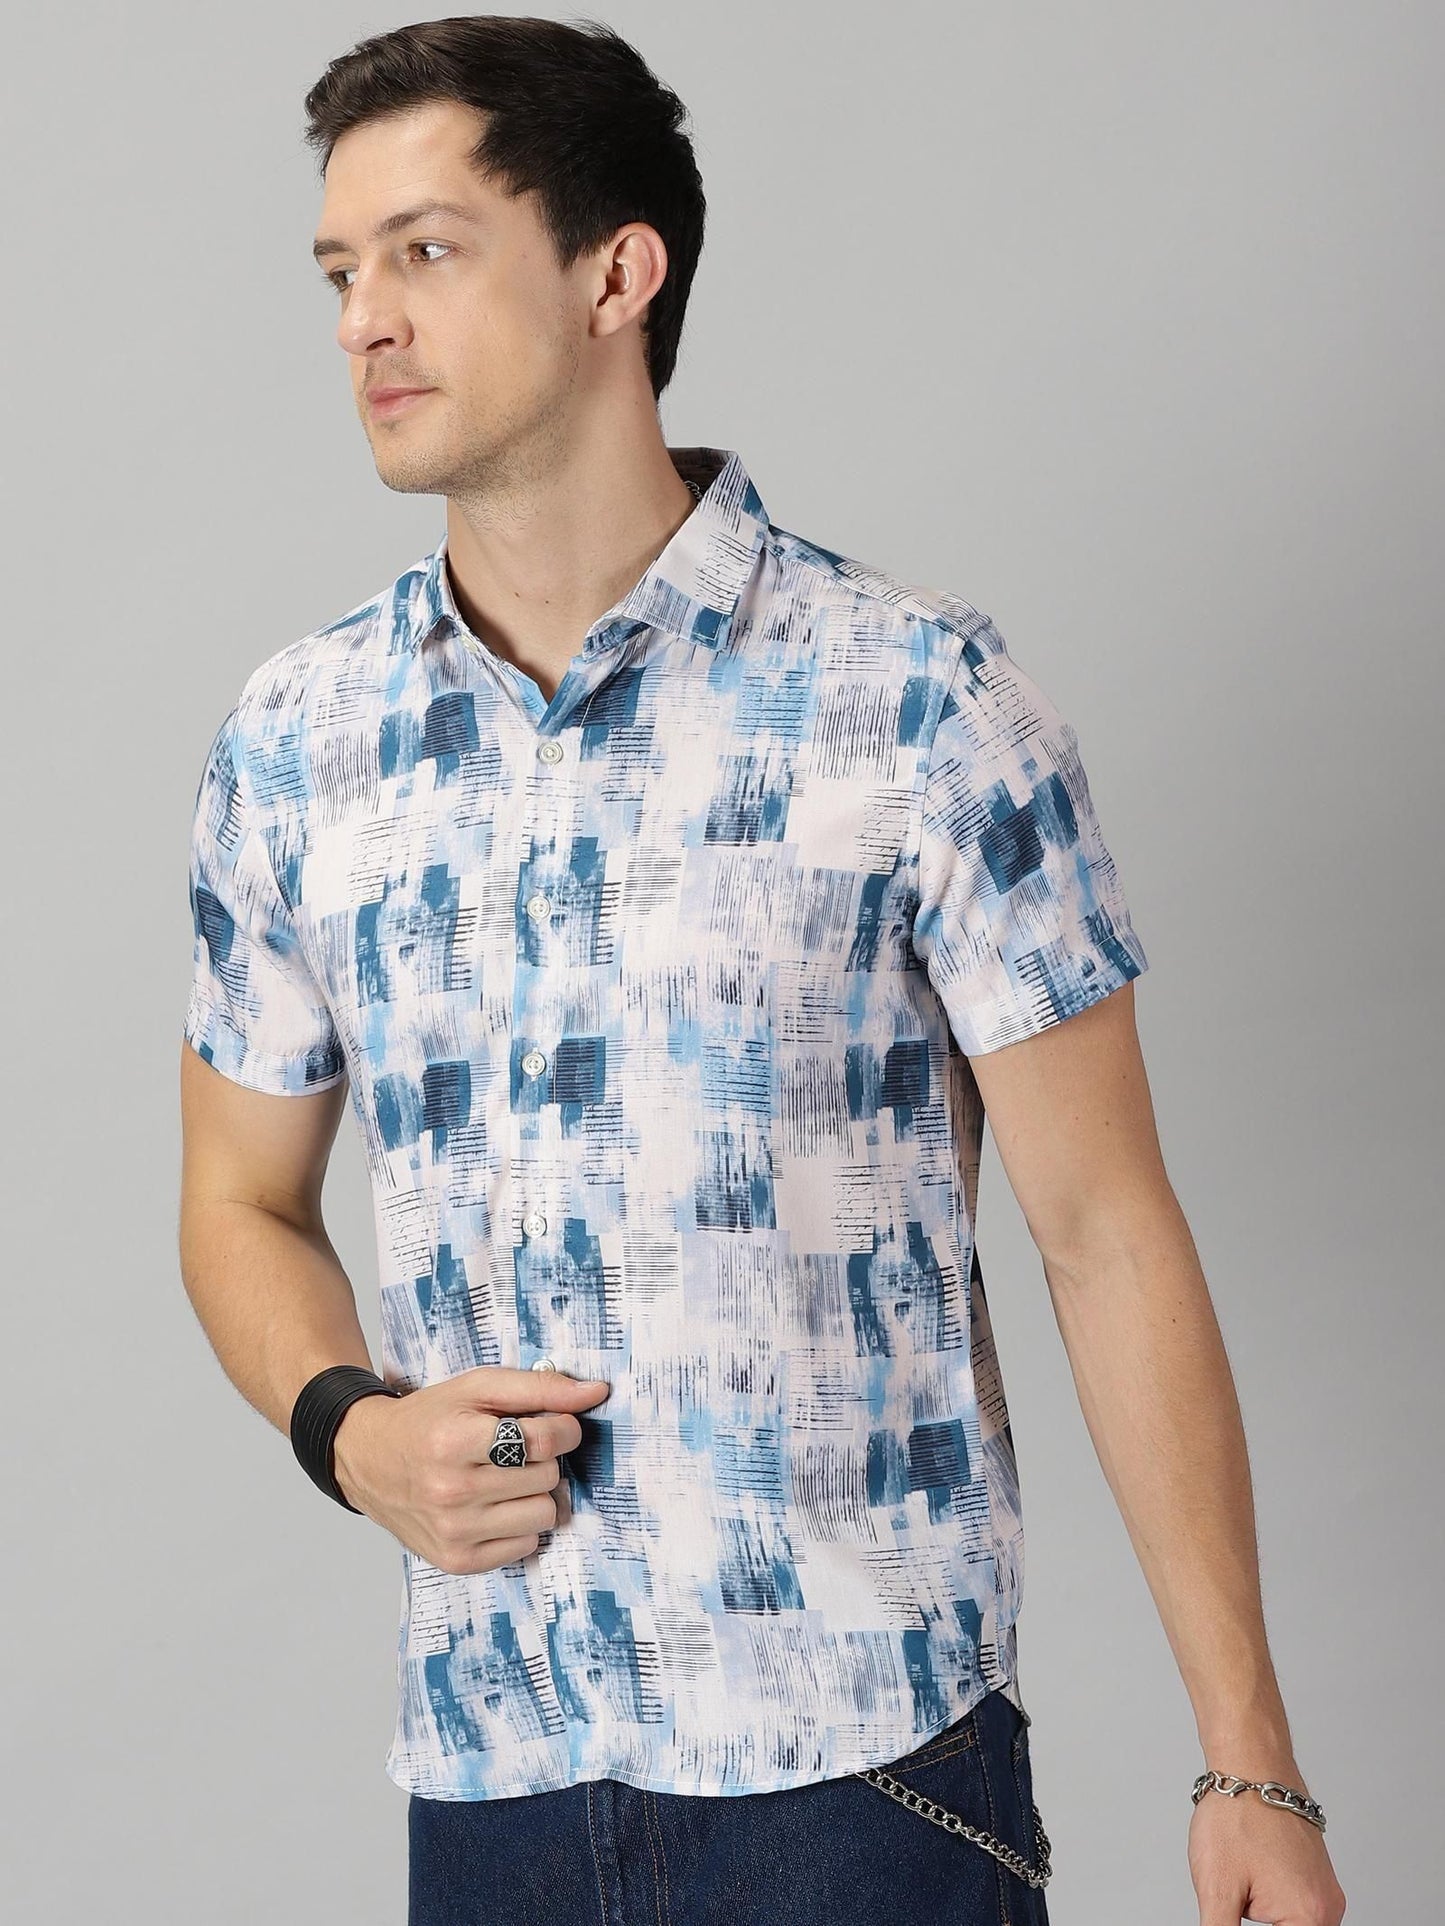 Rayon Printed Half Sleeves  Men's Casual shirt